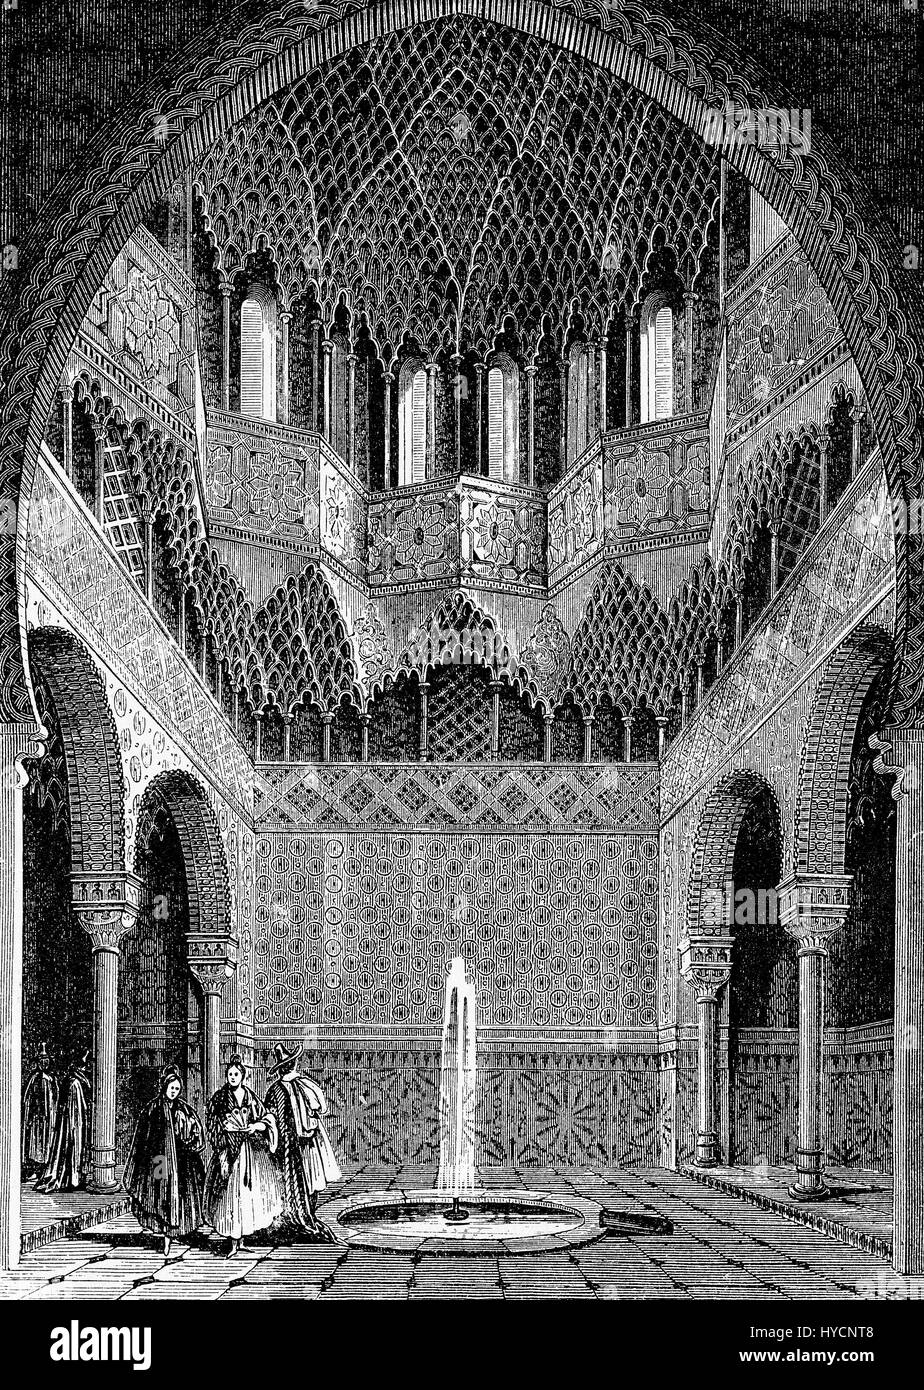 XIX Jahrhundert Gravur der Saal der Abencerrajes in der Zitadelle der Alhambra in Granada, herrliches Beispiel der maurischen Architektur dekoriert Reich von filigranen, Arabesken und Stalaktiten Gewölbe Stockfoto